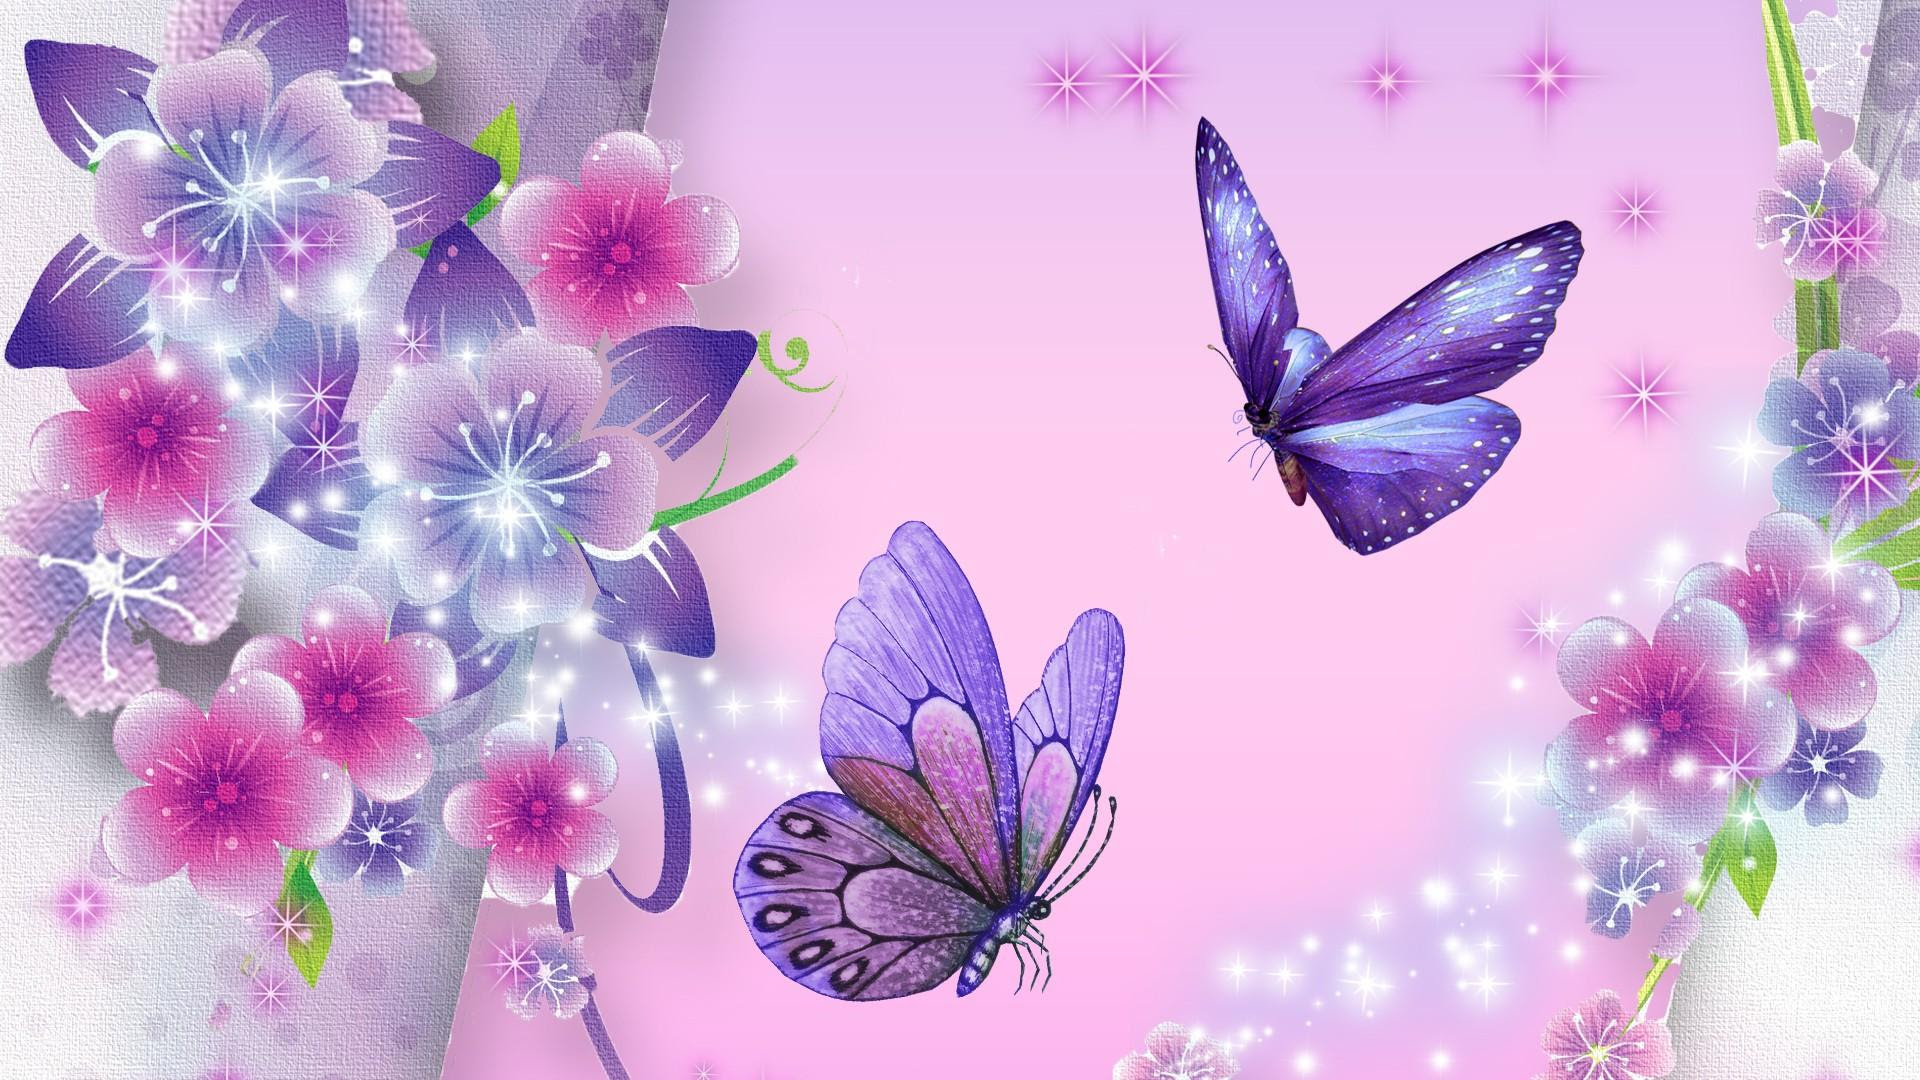 Butterfly Backgrounds free download | PixelsTalk.Net